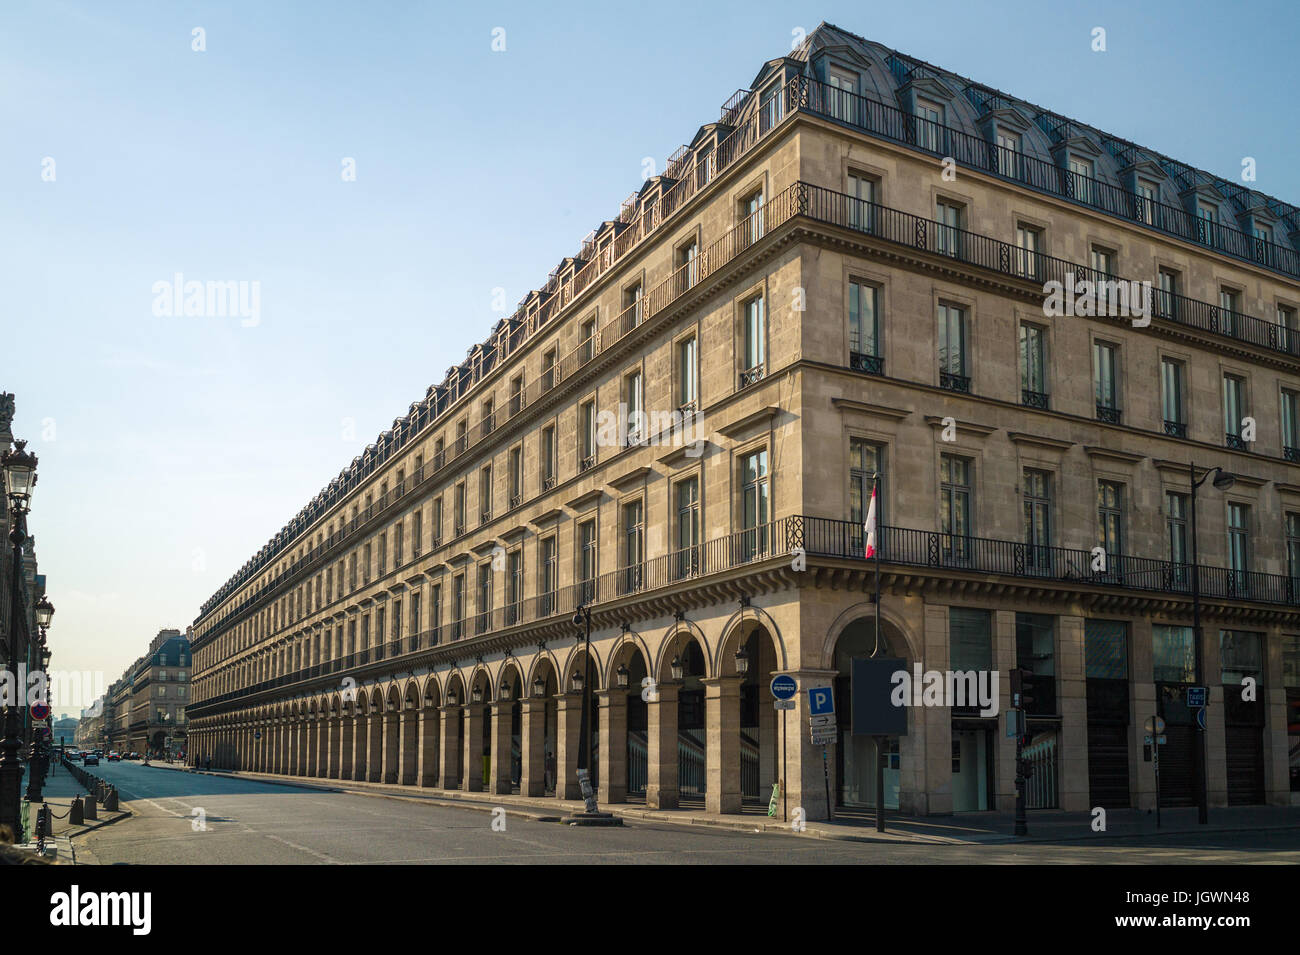 Un edificio dal tipico stile Haussmann a Parigi con balconi, archi e negozi sotto una luce calda del tardo pomeriggio. Foto Stock